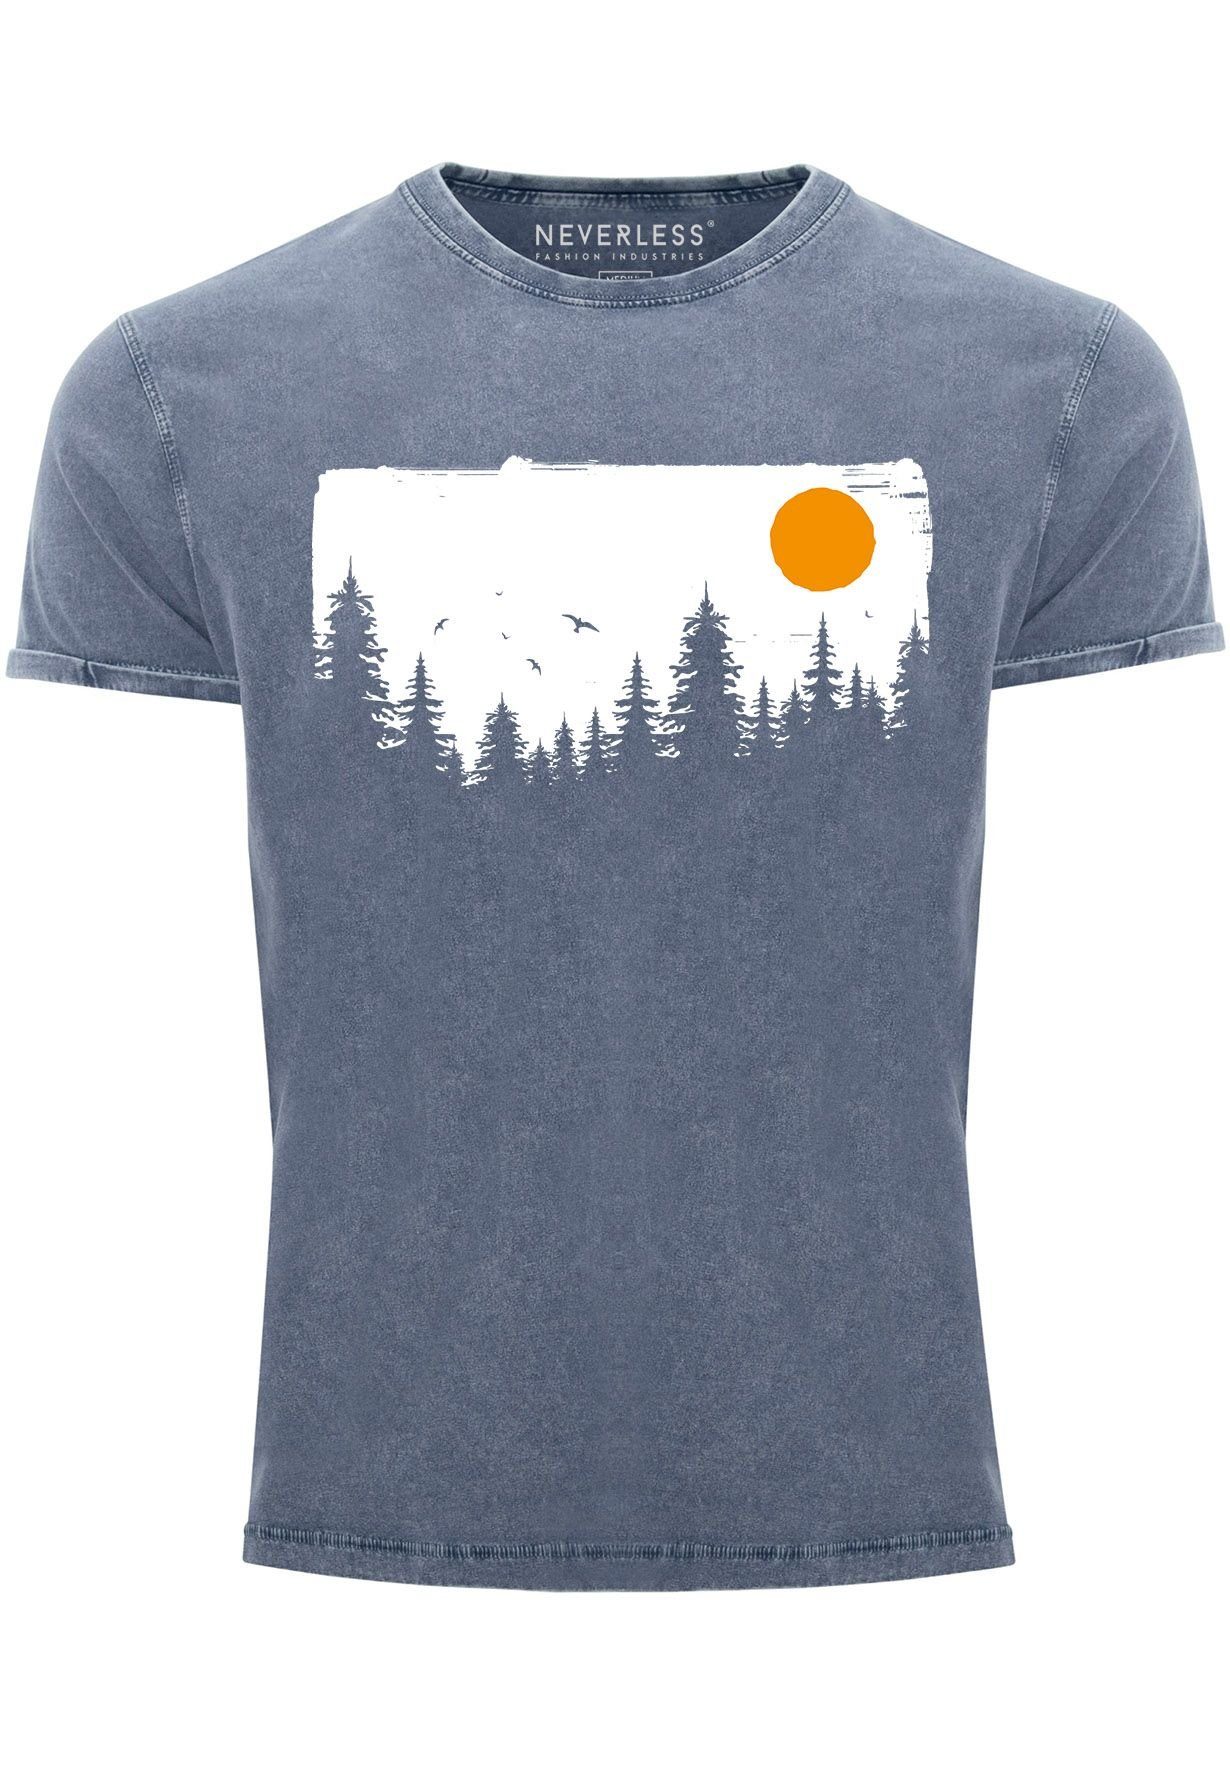 Neuzugänge diesen Monat Neverless Print-Shirt Herren Vintage Shirt blau Bäume Outdoor Abenteuer Print Adventure mit Natur-Lieb Wald